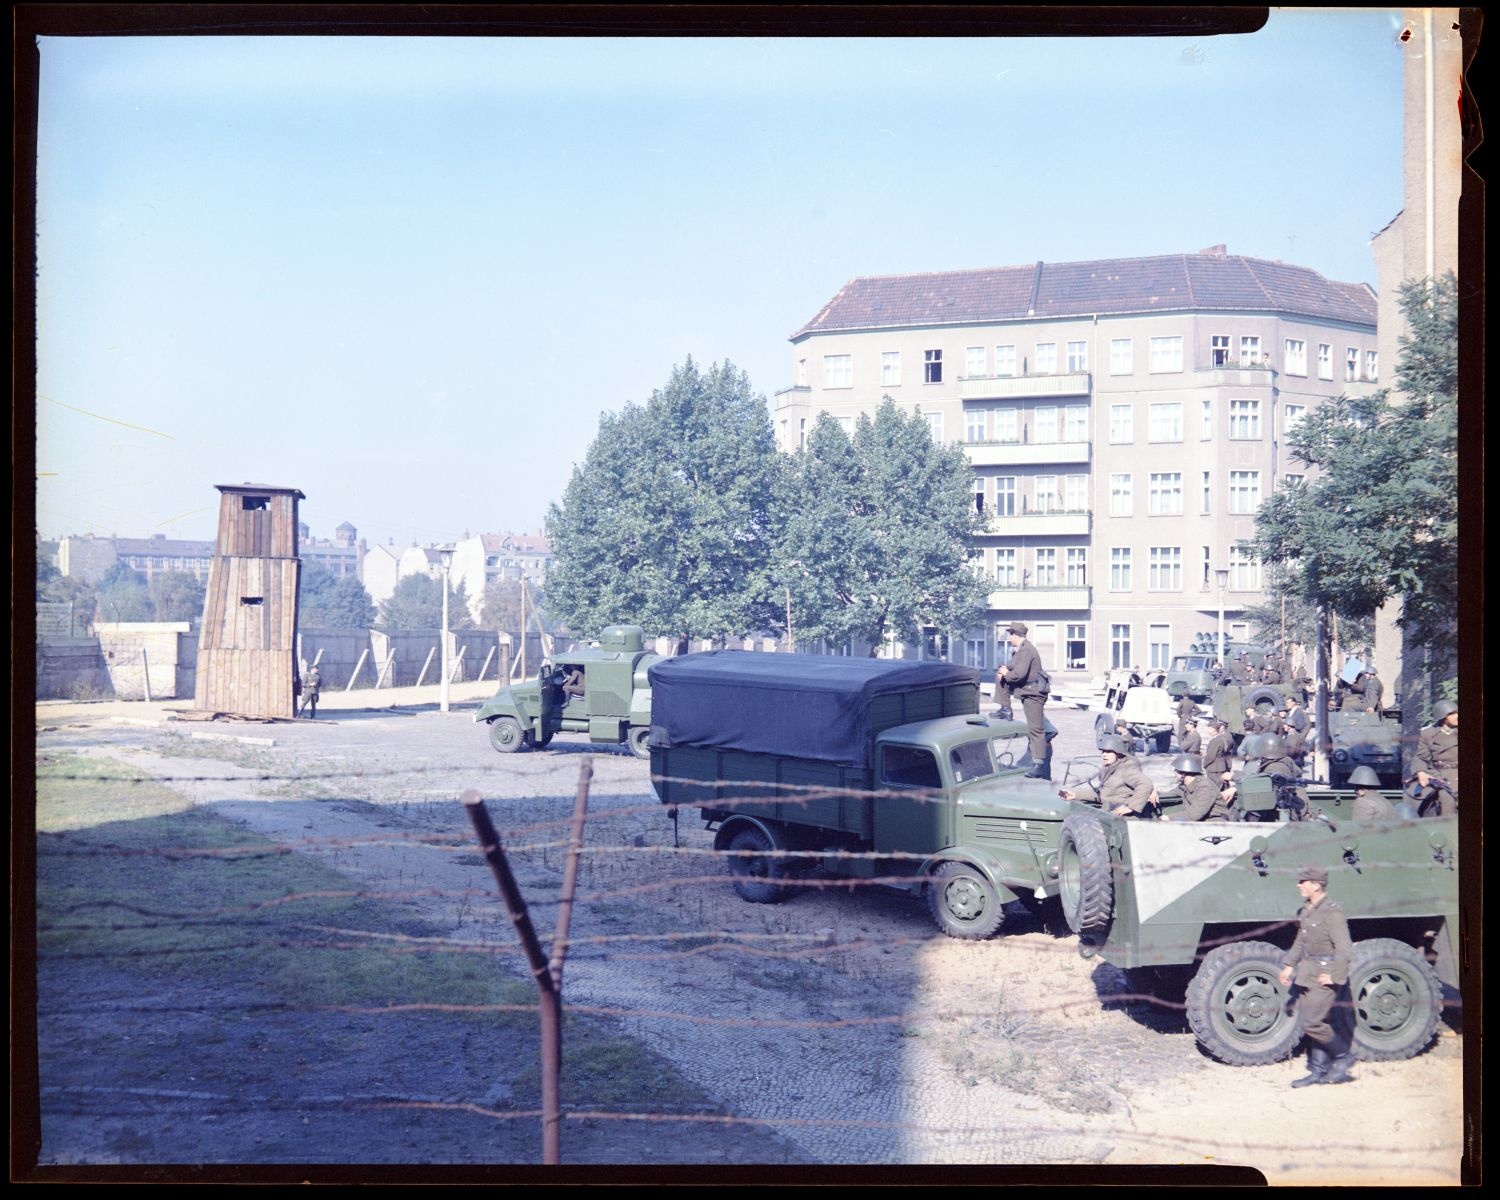 Fotografie: Provisorische Grenzanlagen an der Lohmühlenstraße in Berlin-Treptow (AlliiertenMuseum/U.S. Army Photograph Public Domain Mark)